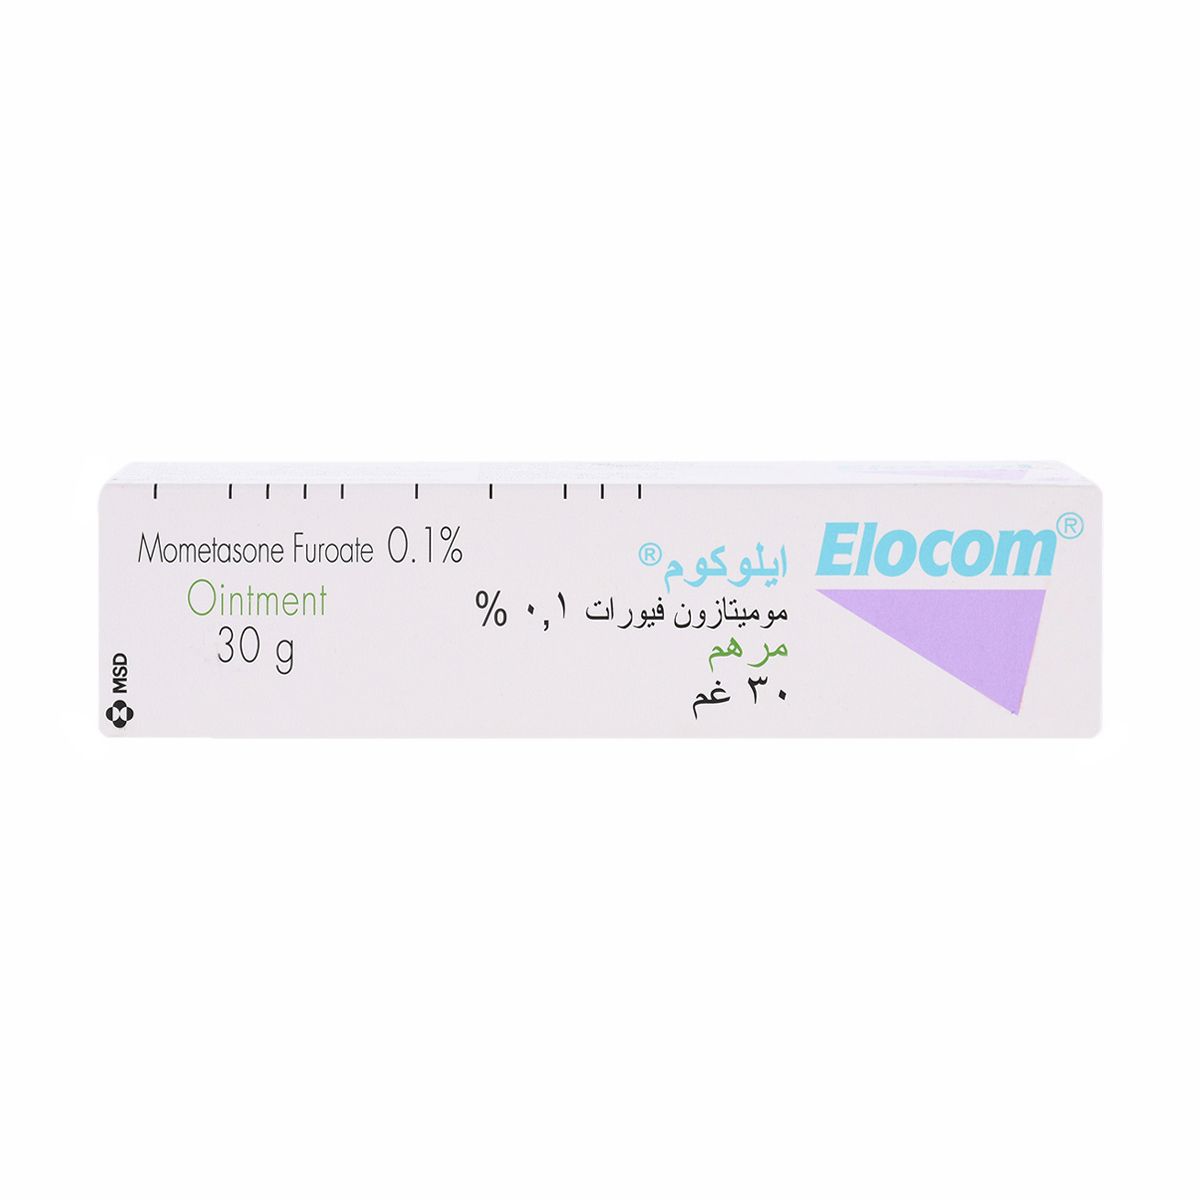 ELOCOM Elocom 0.1% Oint 30g